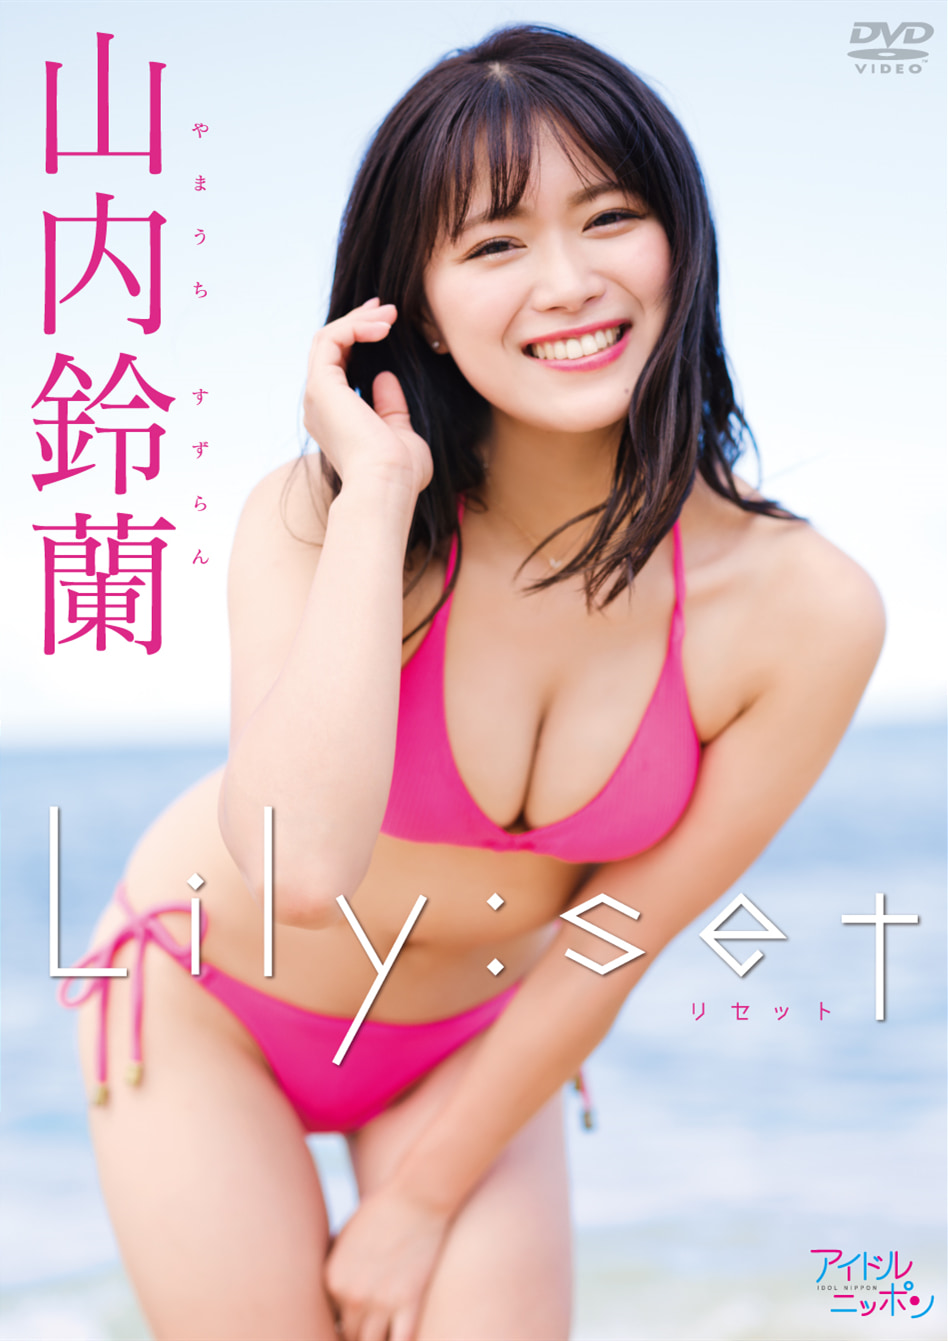 山内铃兰DVD写真集《Lily : set》高清无水印完整版[3.9G] 日系视频-第1张